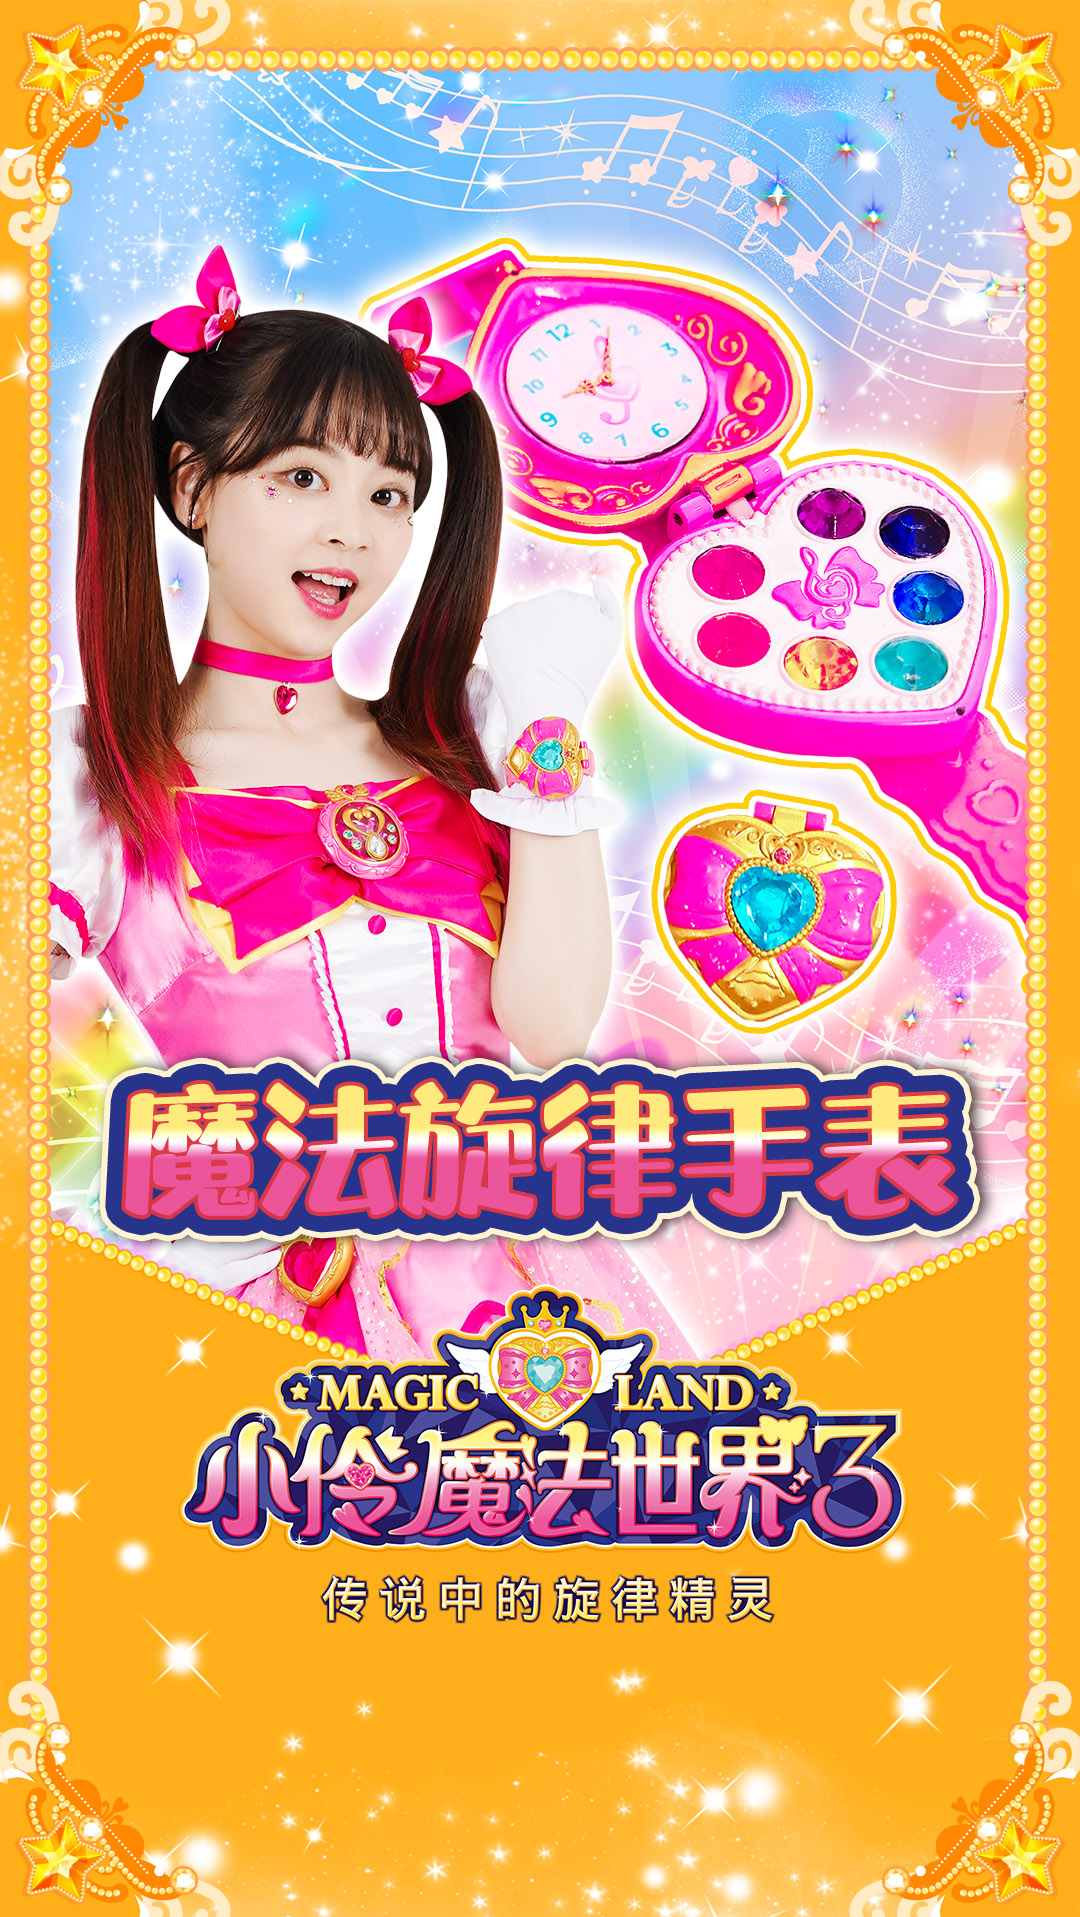 小伶魔法世界小伶魔法世界3道具介绍魔法旋律手表